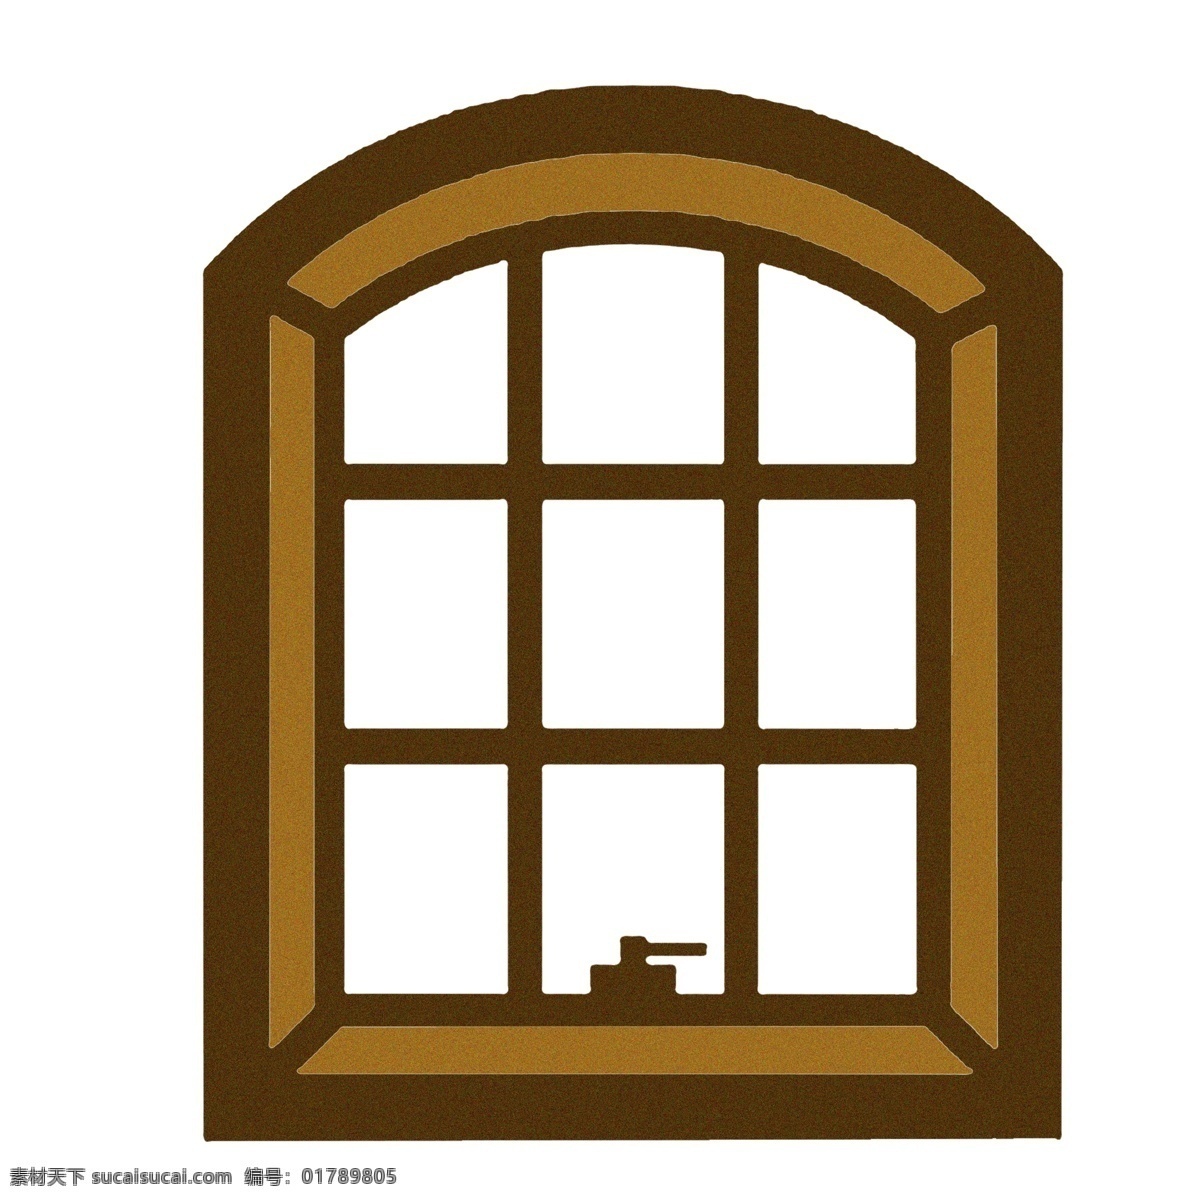 窗子 棕色 装饰 图案 木质 卡通 彩色 小清新 创意 手绘 绘画元素 现代 简约